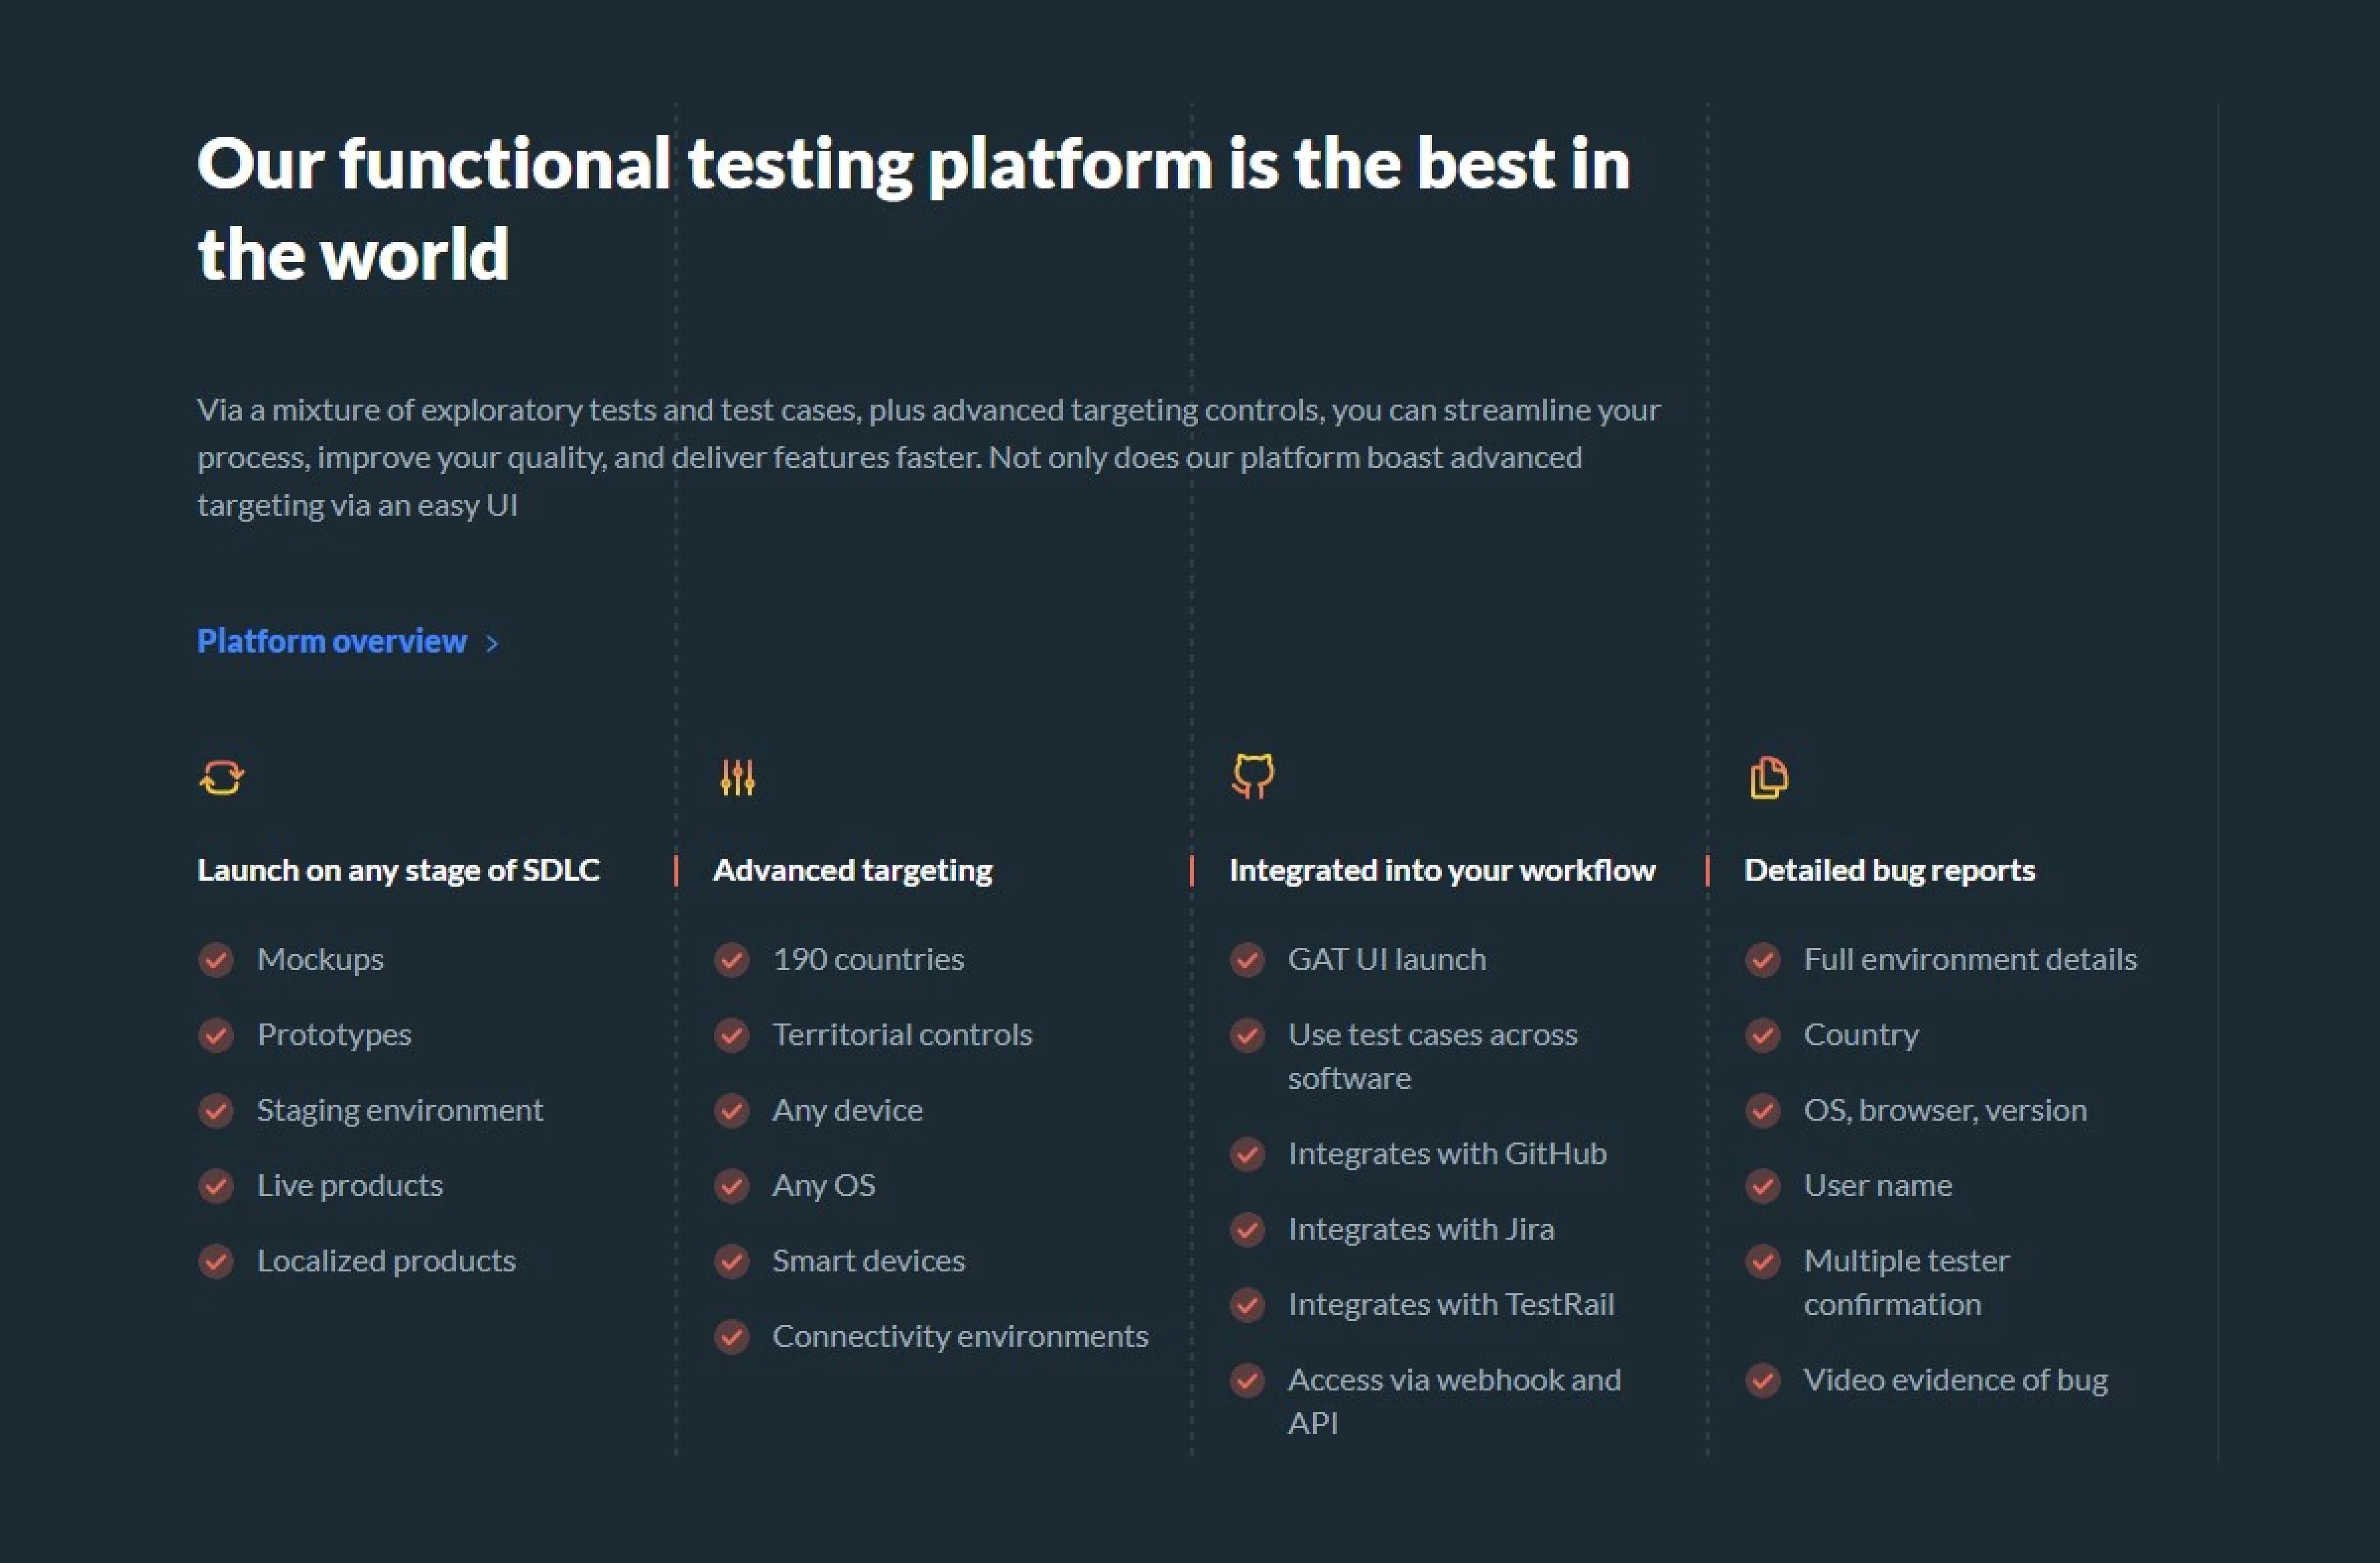 functional-testing-platform-gat